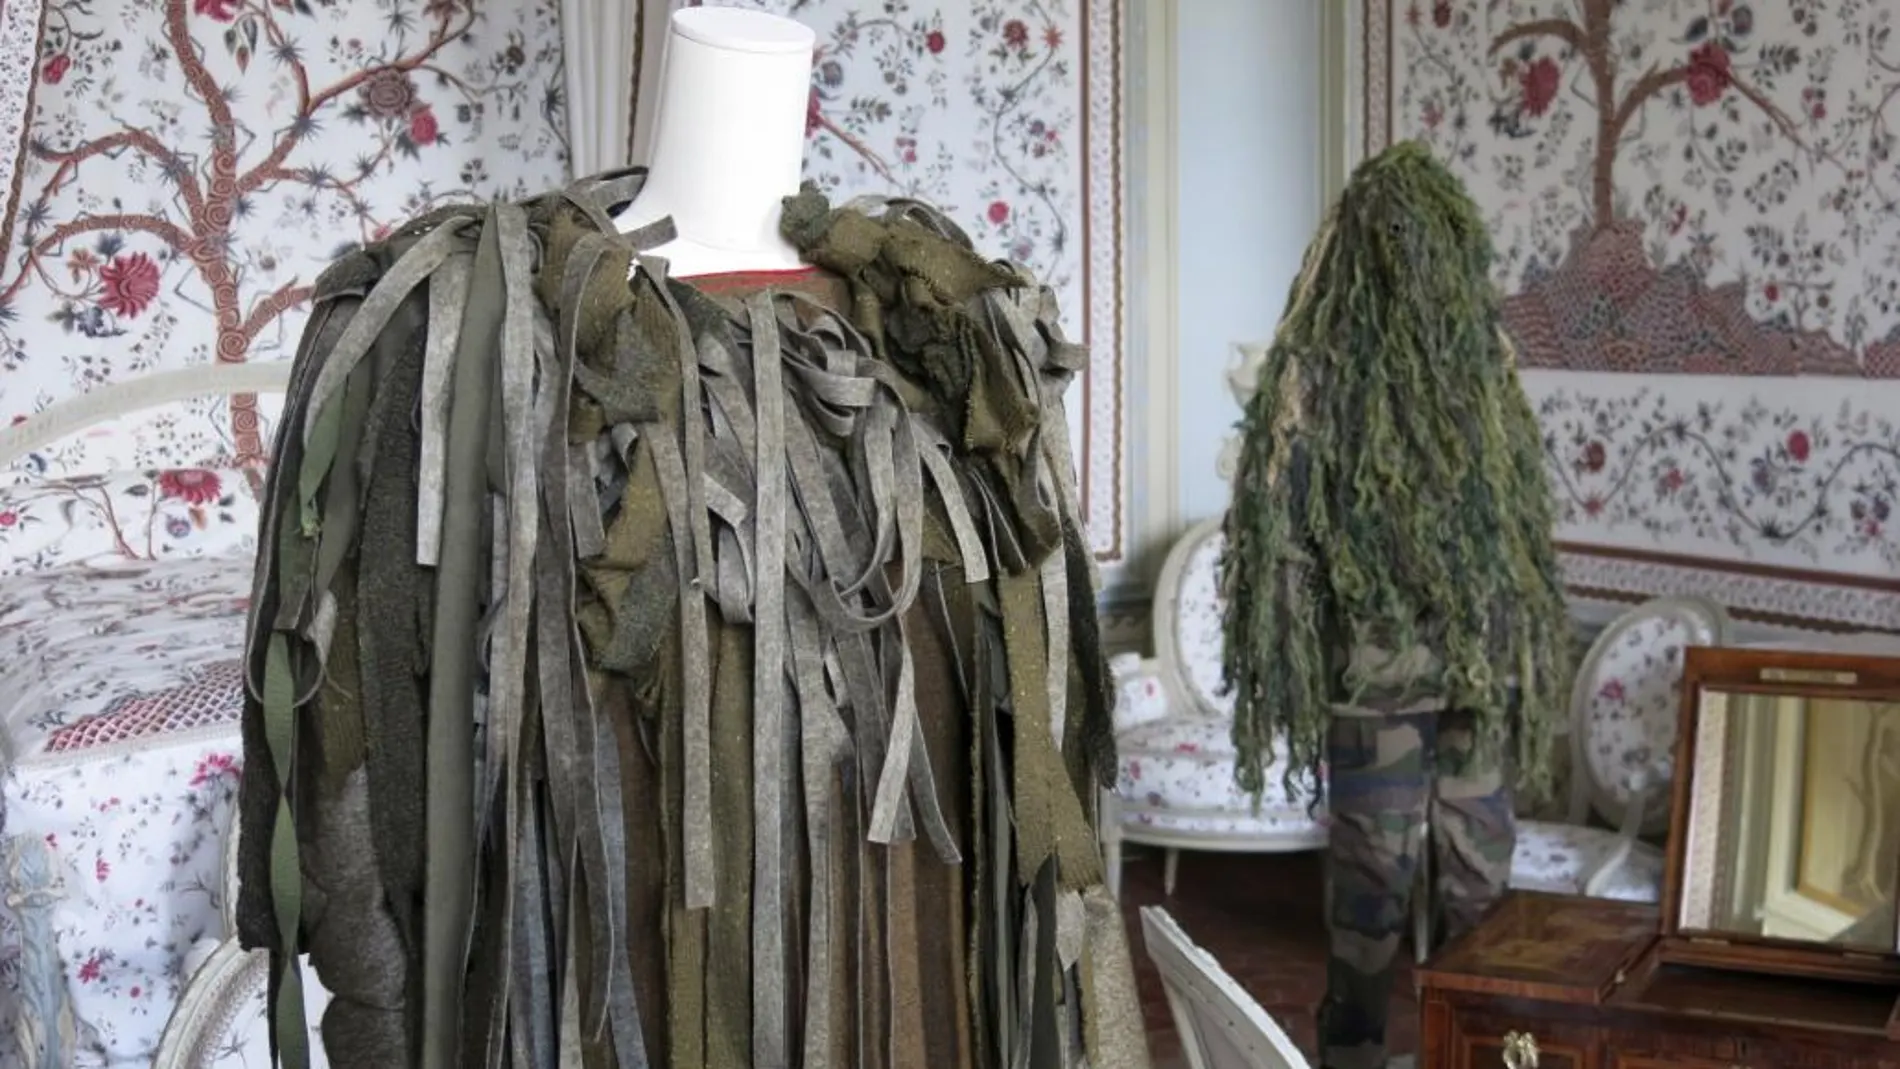 Algunas de las vestimentas de Alta Costura inspiradas en el estilo militar que forman parte de la exposición "Mission Mode"